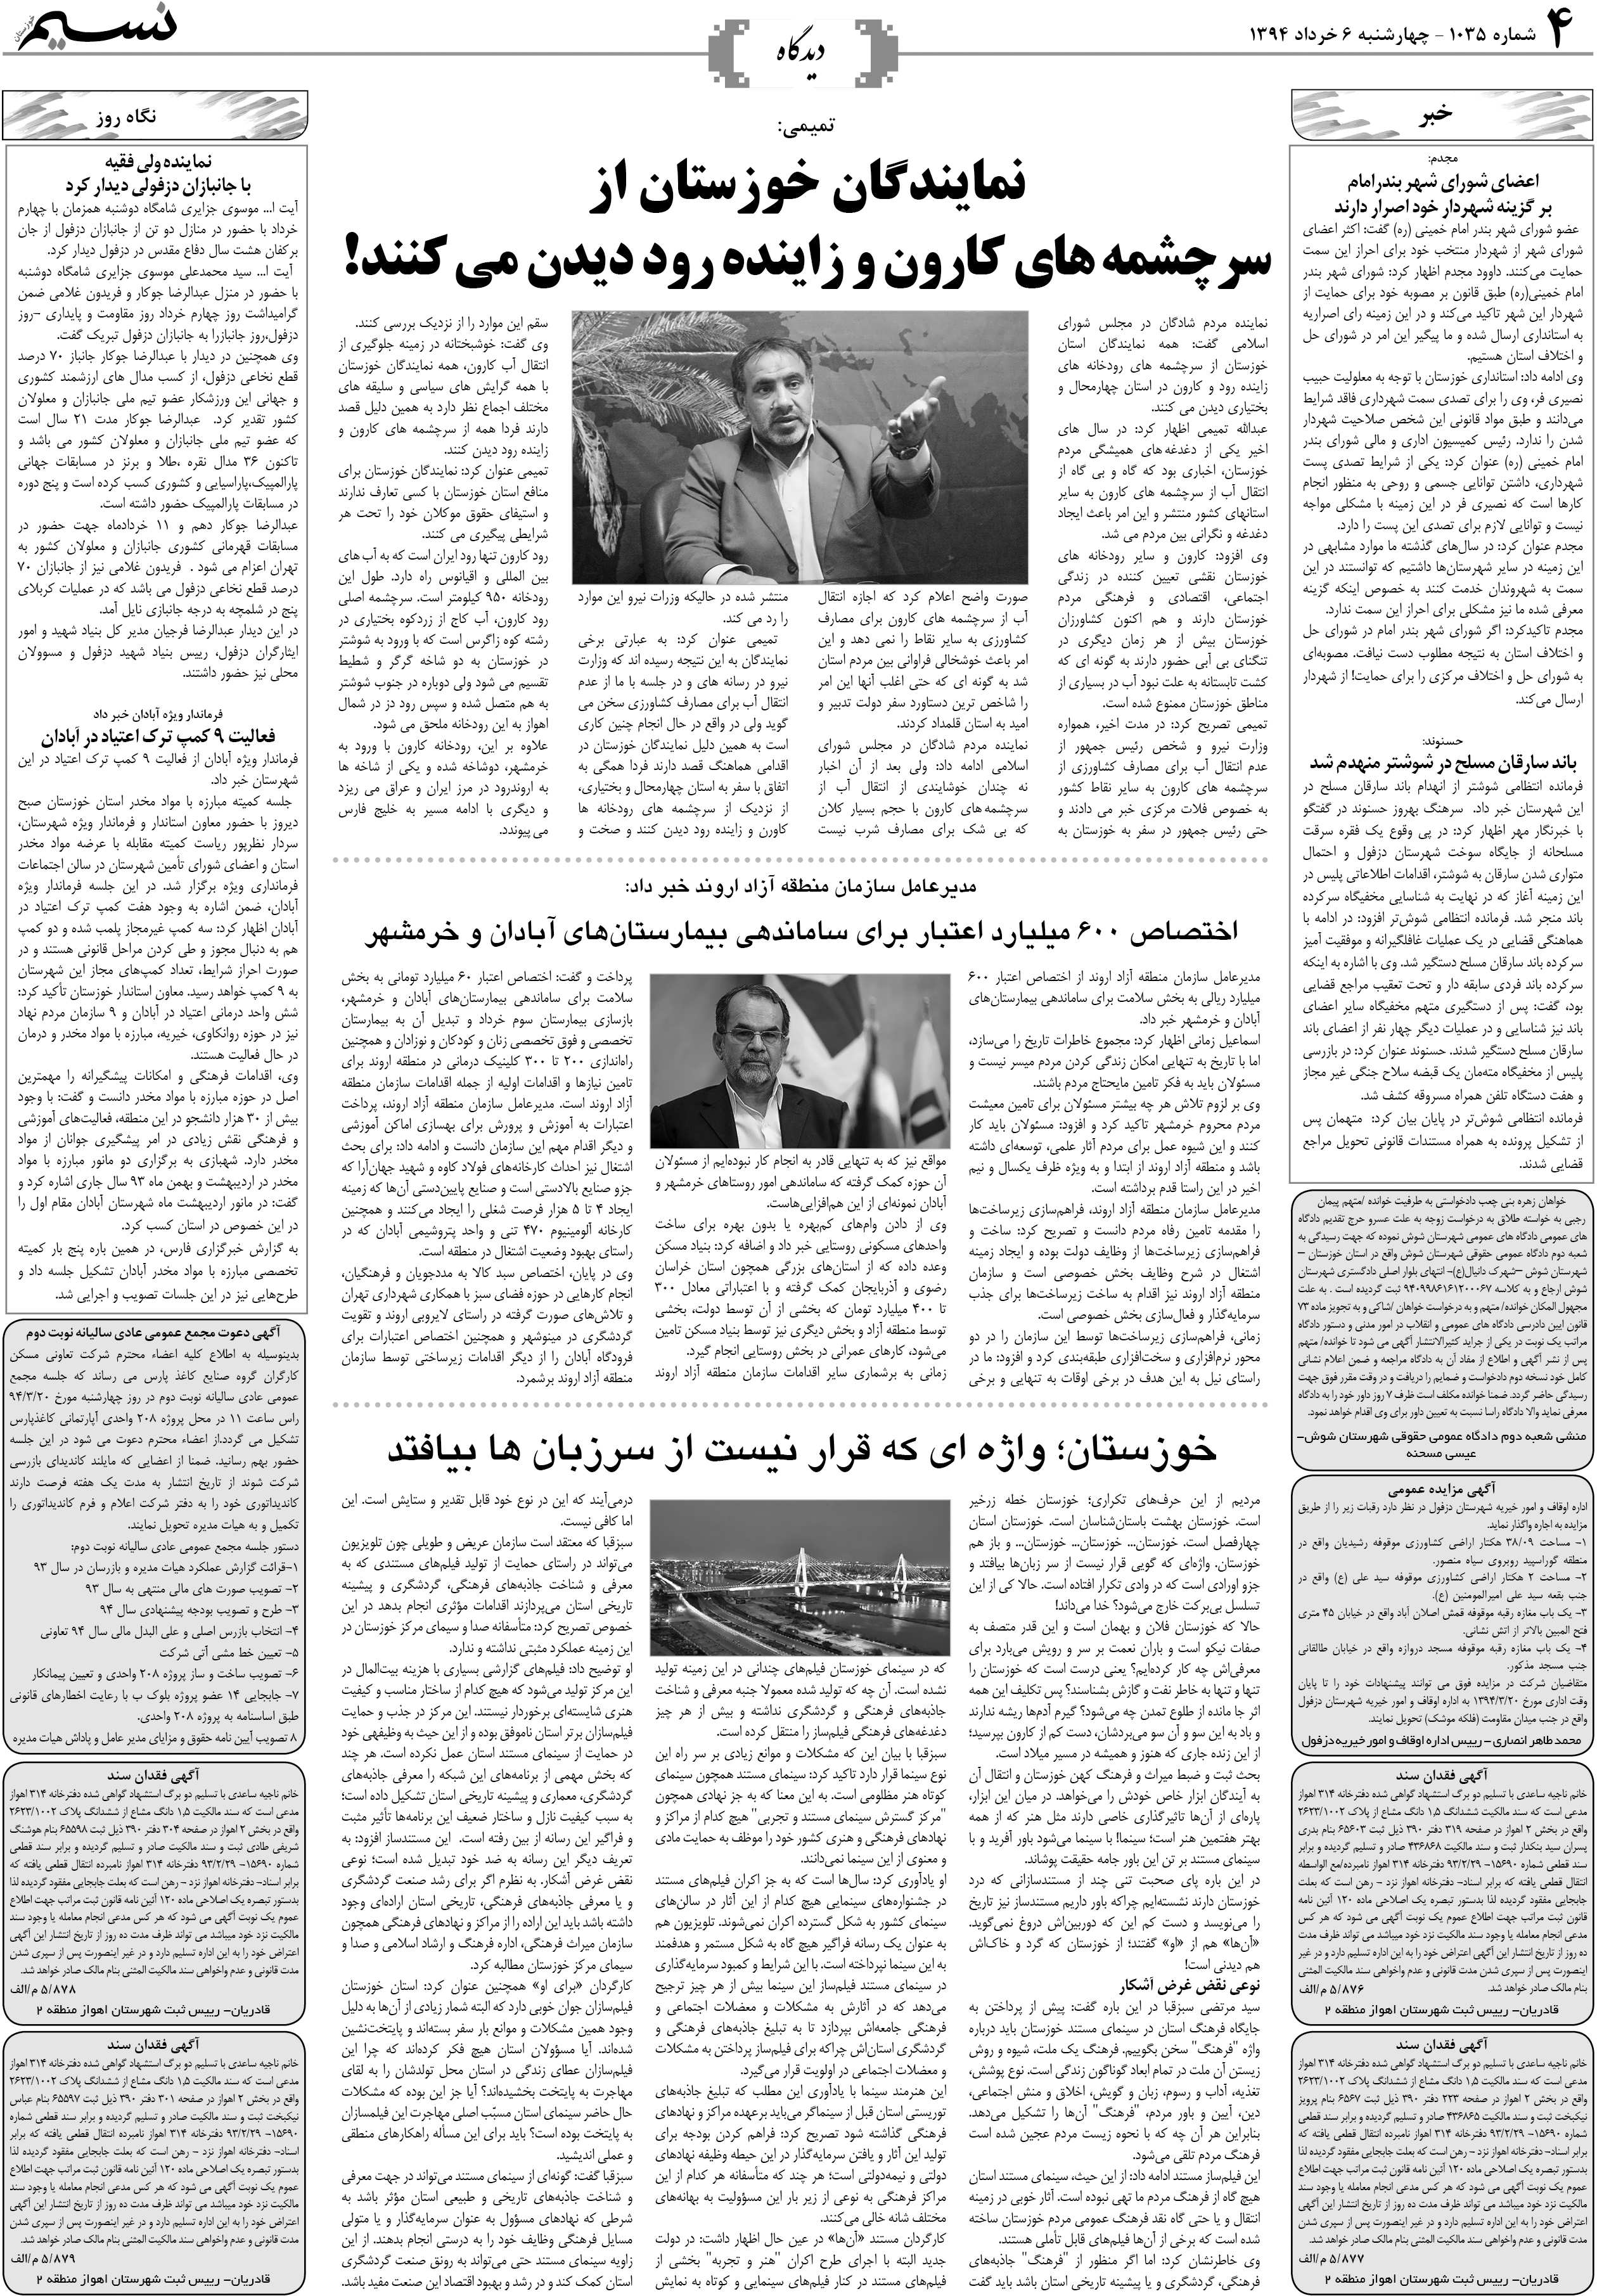 صفحه دیدگاه روزنامه نسیم شماره 1035